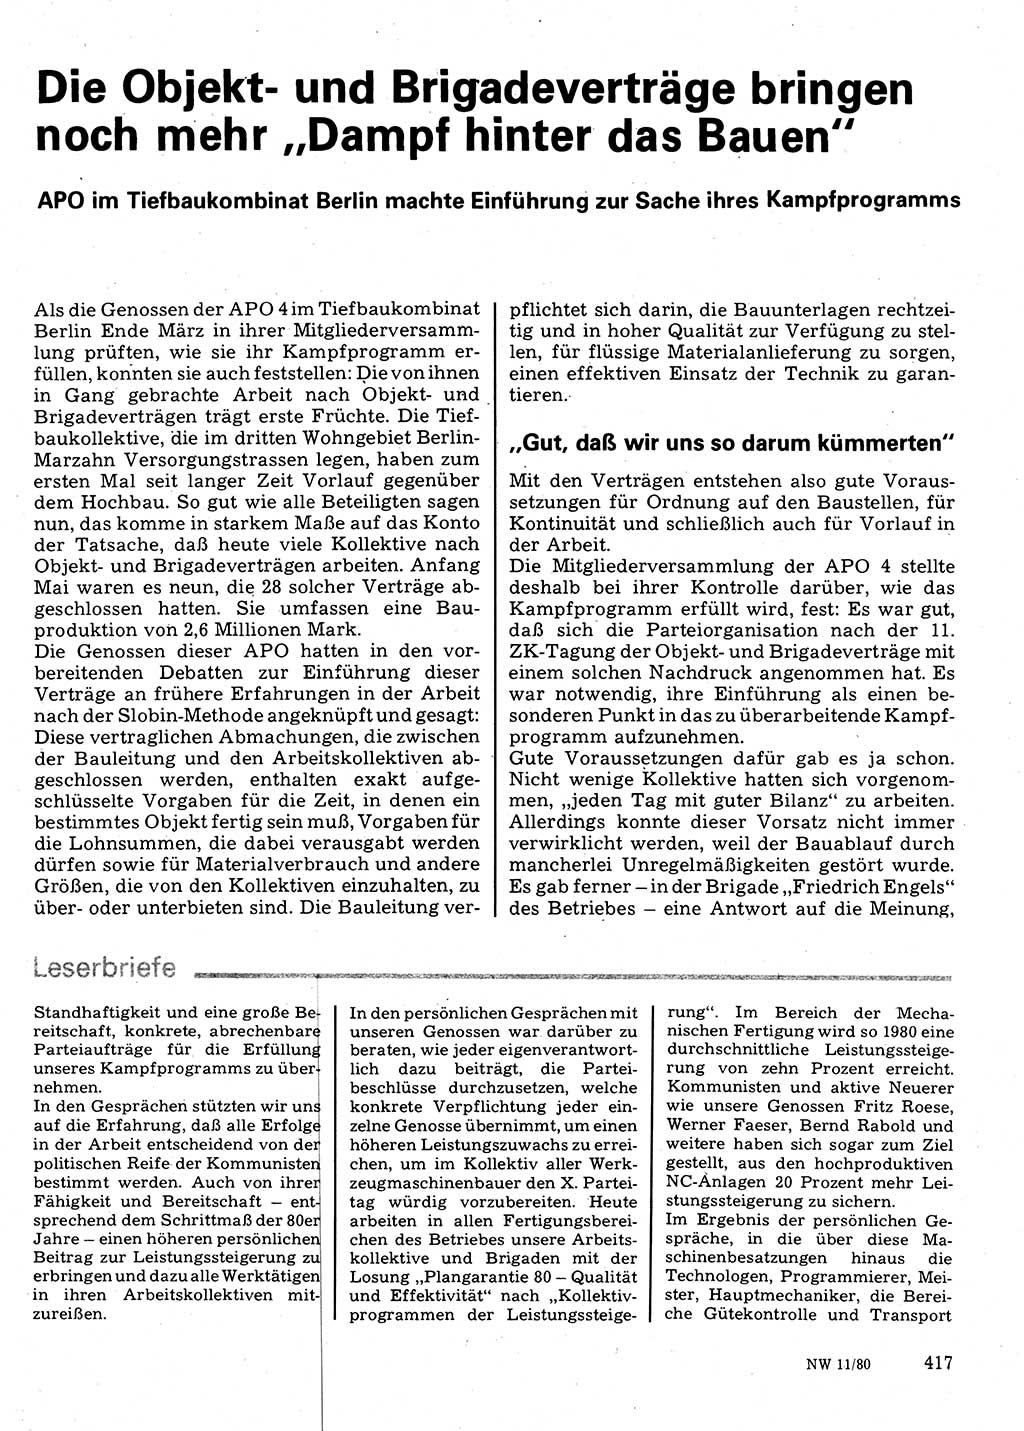 Neuer Weg (NW), Organ des Zentralkomitees (ZK) der SED (Sozialistische Einheitspartei Deutschlands) für Fragen des Parteilebens, 35. Jahrgang [Deutsche Demokratische Republik (DDR)] 1980, Seite 417 (NW ZK SED DDR 1980, S. 417)